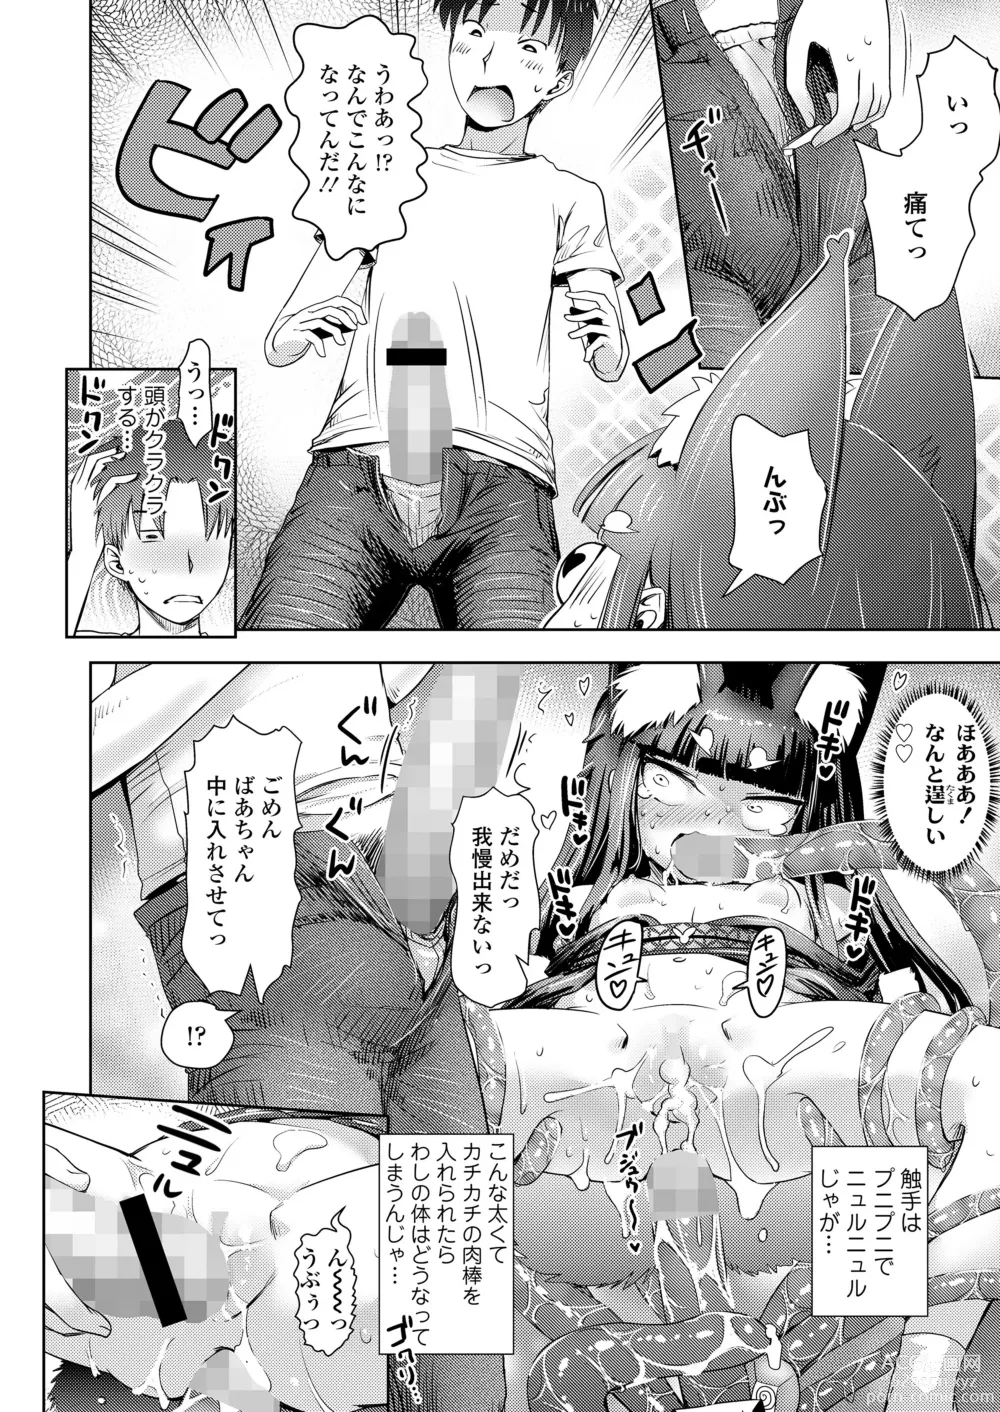 Page 188 of manga Towako Oboro Emaki 14